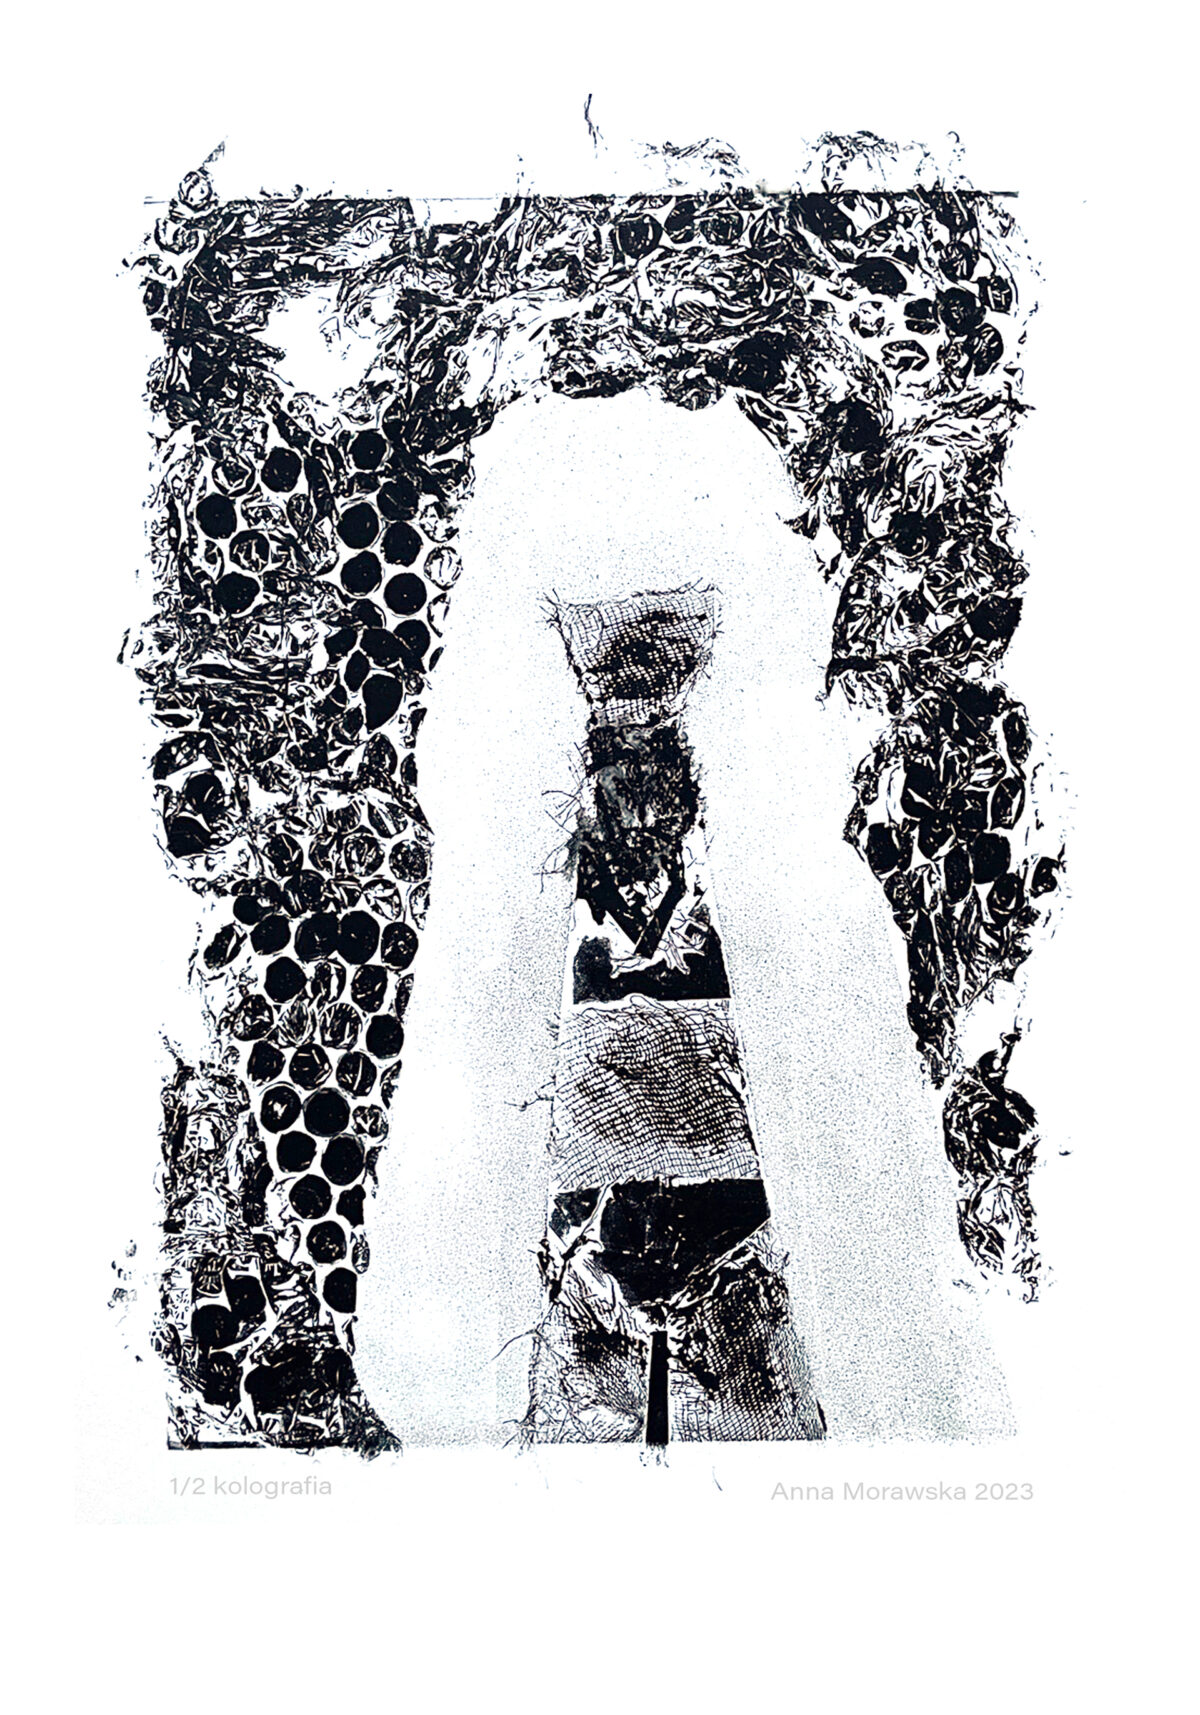 Grafika czarno-biała. Przedstawia w sposób uproszczony kobietę w bieliźnie, z długimi włosami, które wychodzą poza kadr obrazka. Grafika wykonana jest z różnych struktur powierzchni takich jak: gaza czy folia bąbelkowa.